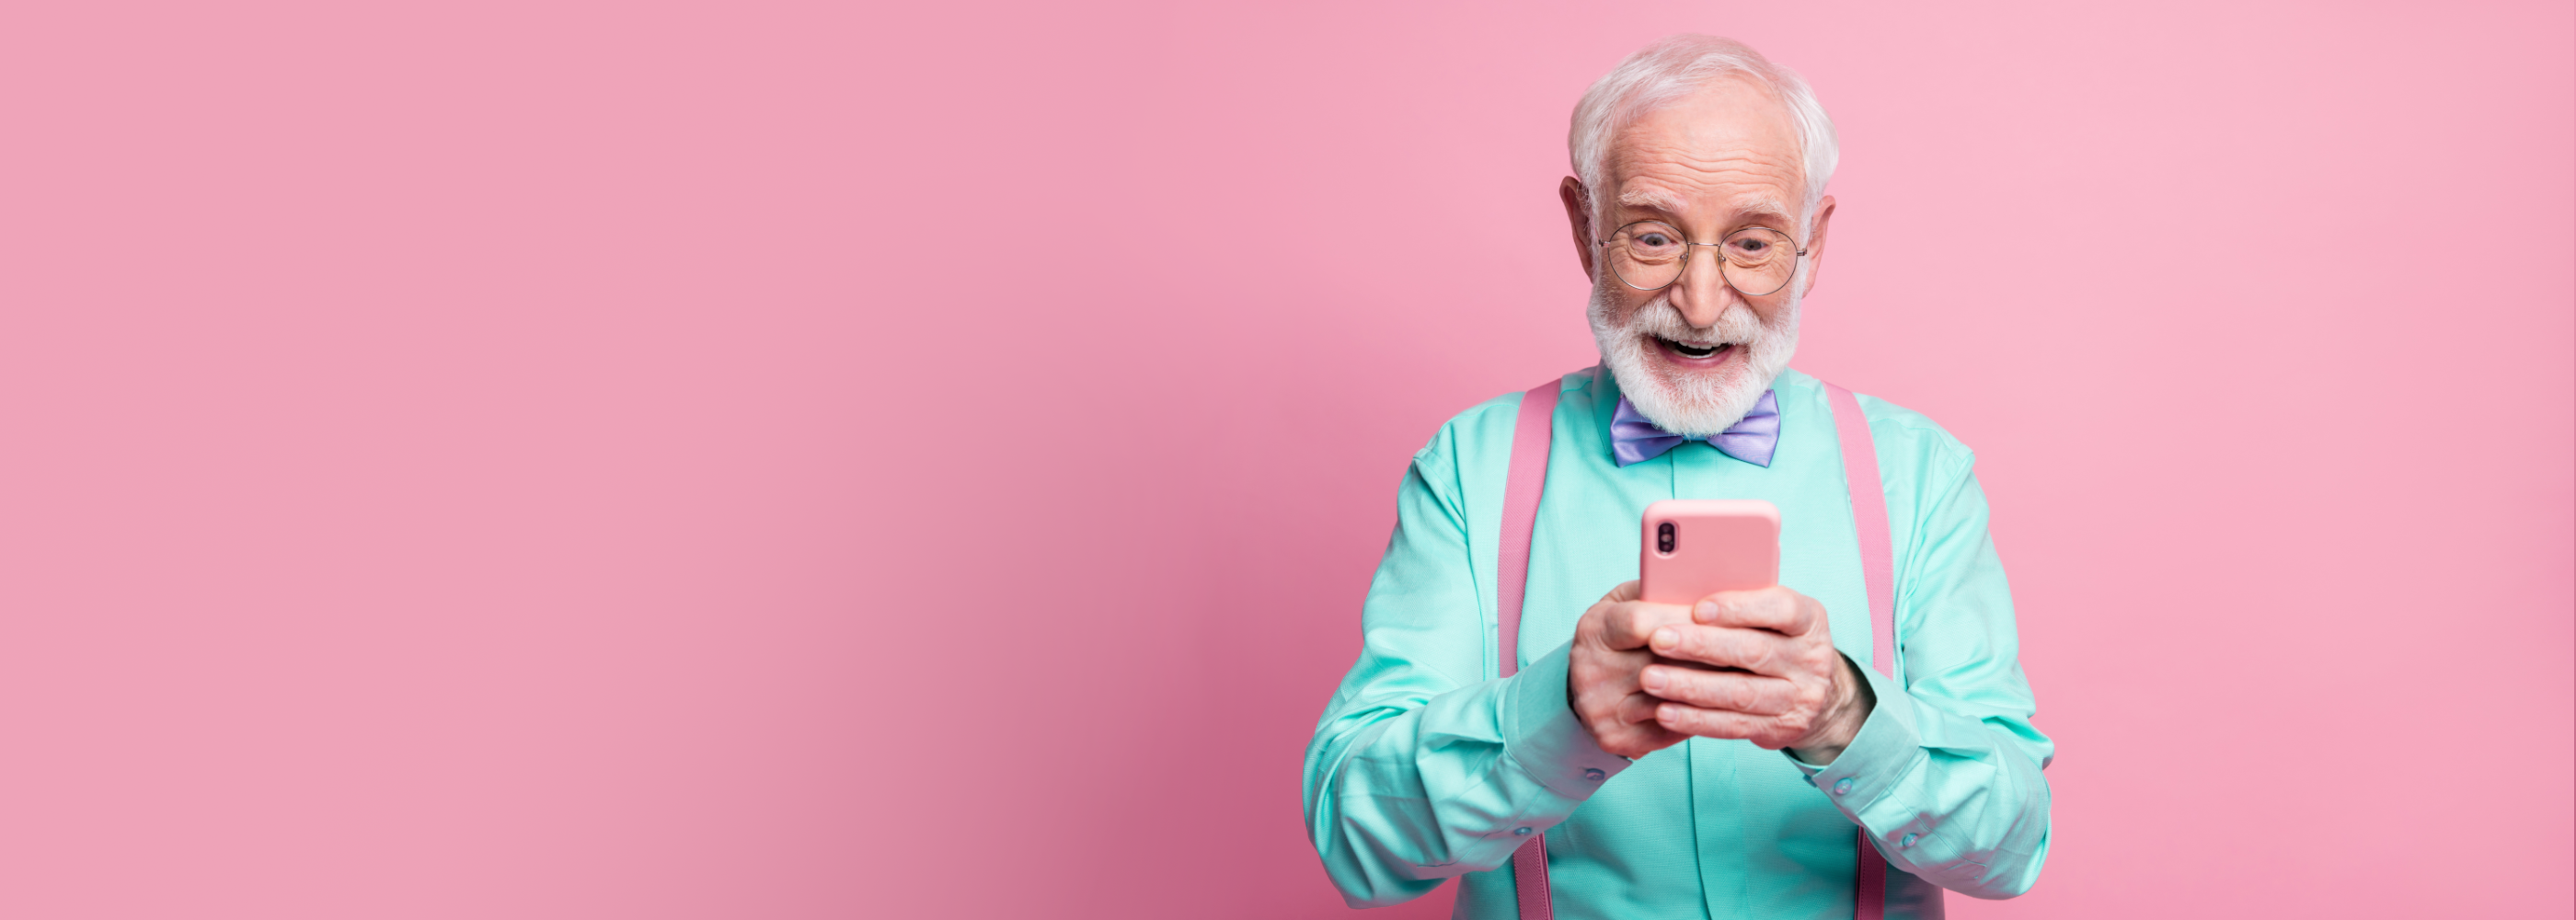 Senior mit Smartphone vor pinkem Hintergrund